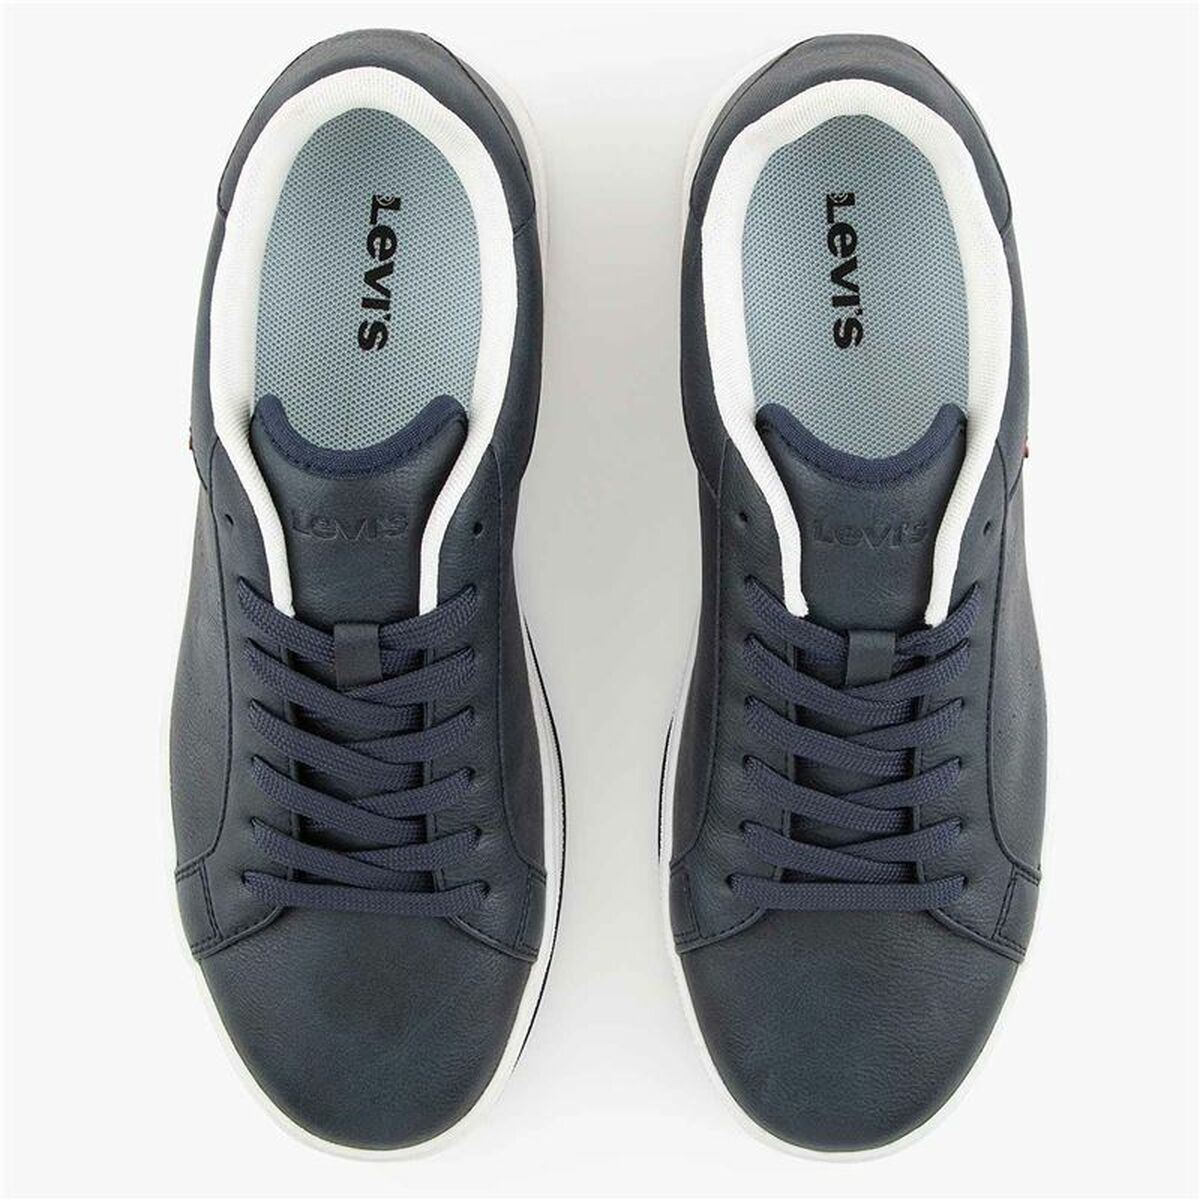 Chaussures de Sport pour Homme Levi's Piper Navy Bleu Noir